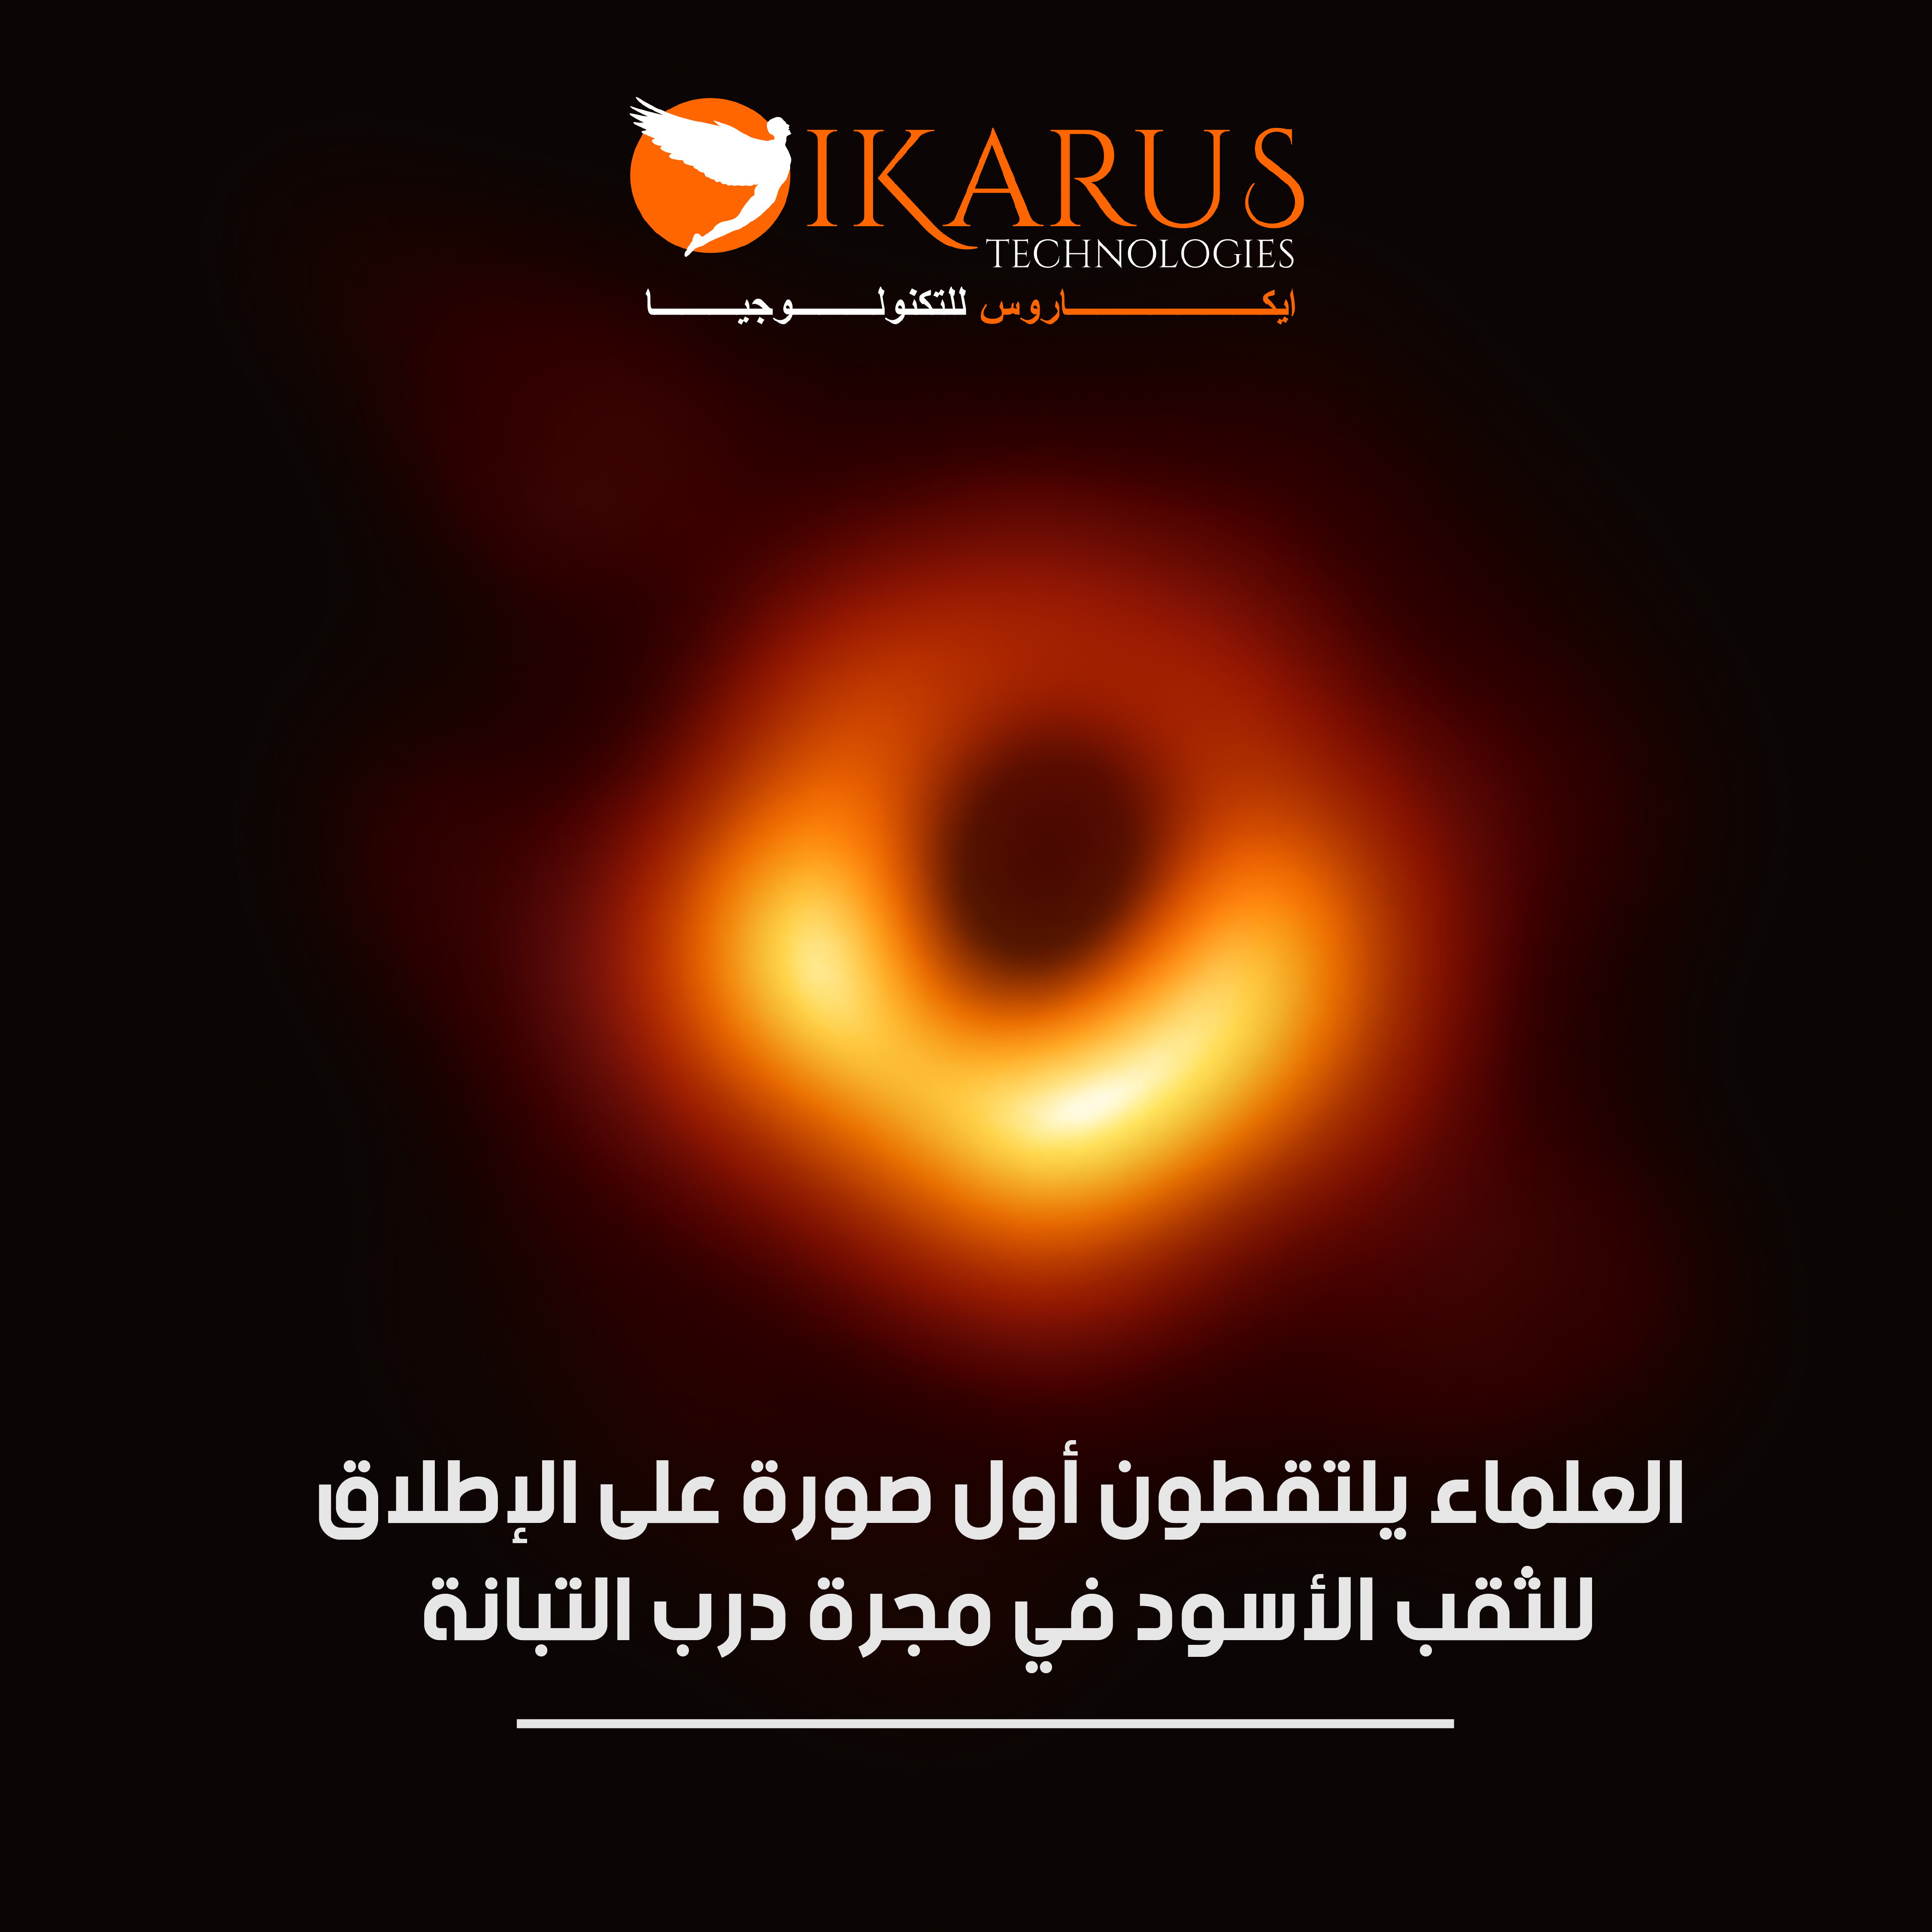 العلماء يلتقطون أول صورة على الإطلاق للثقب الأسود في مجرة درب التبانة